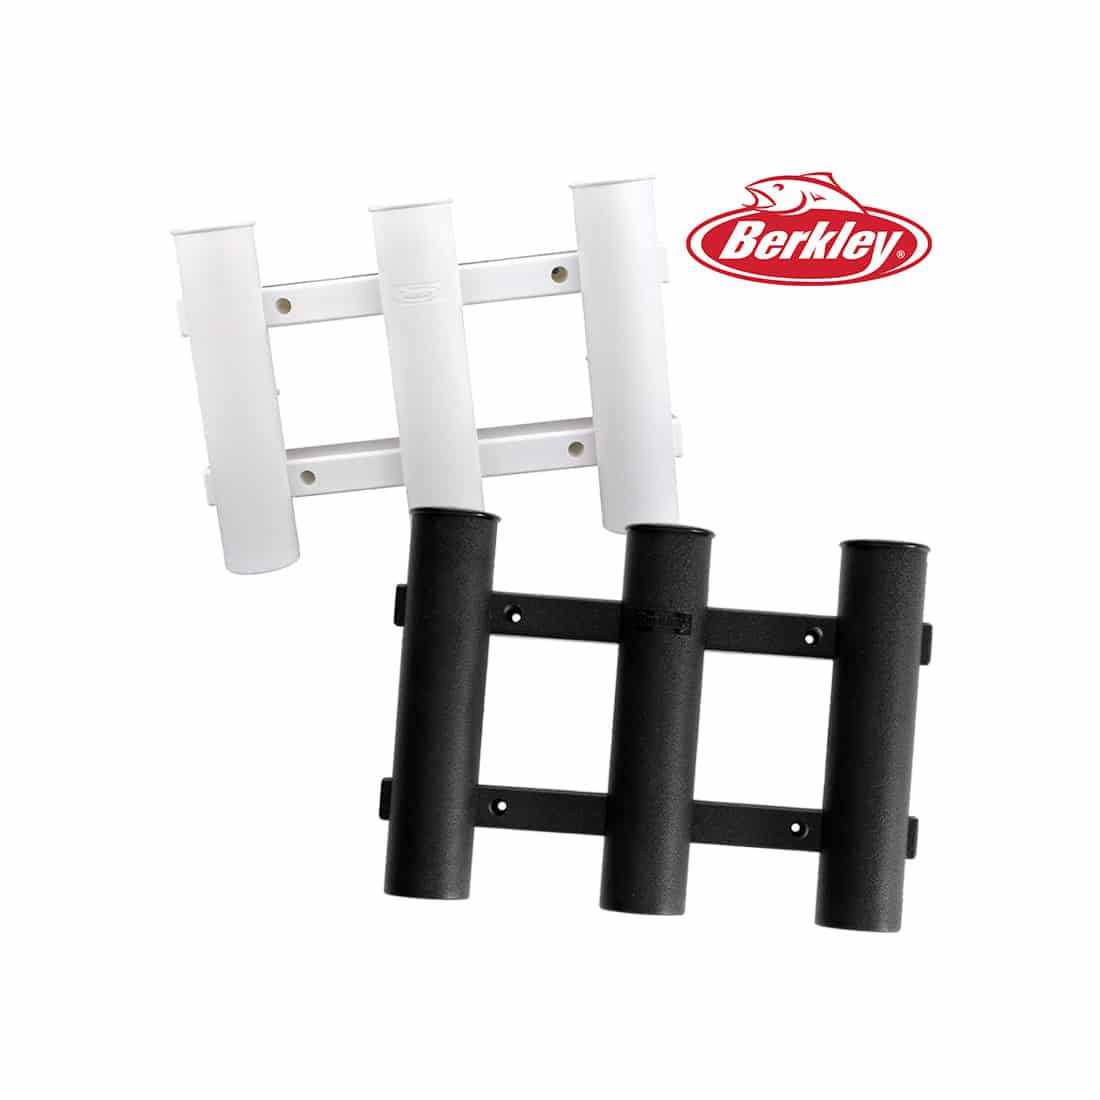 Berkley Rod Holder Tube / Rack For 3 Rods White - 1318289 